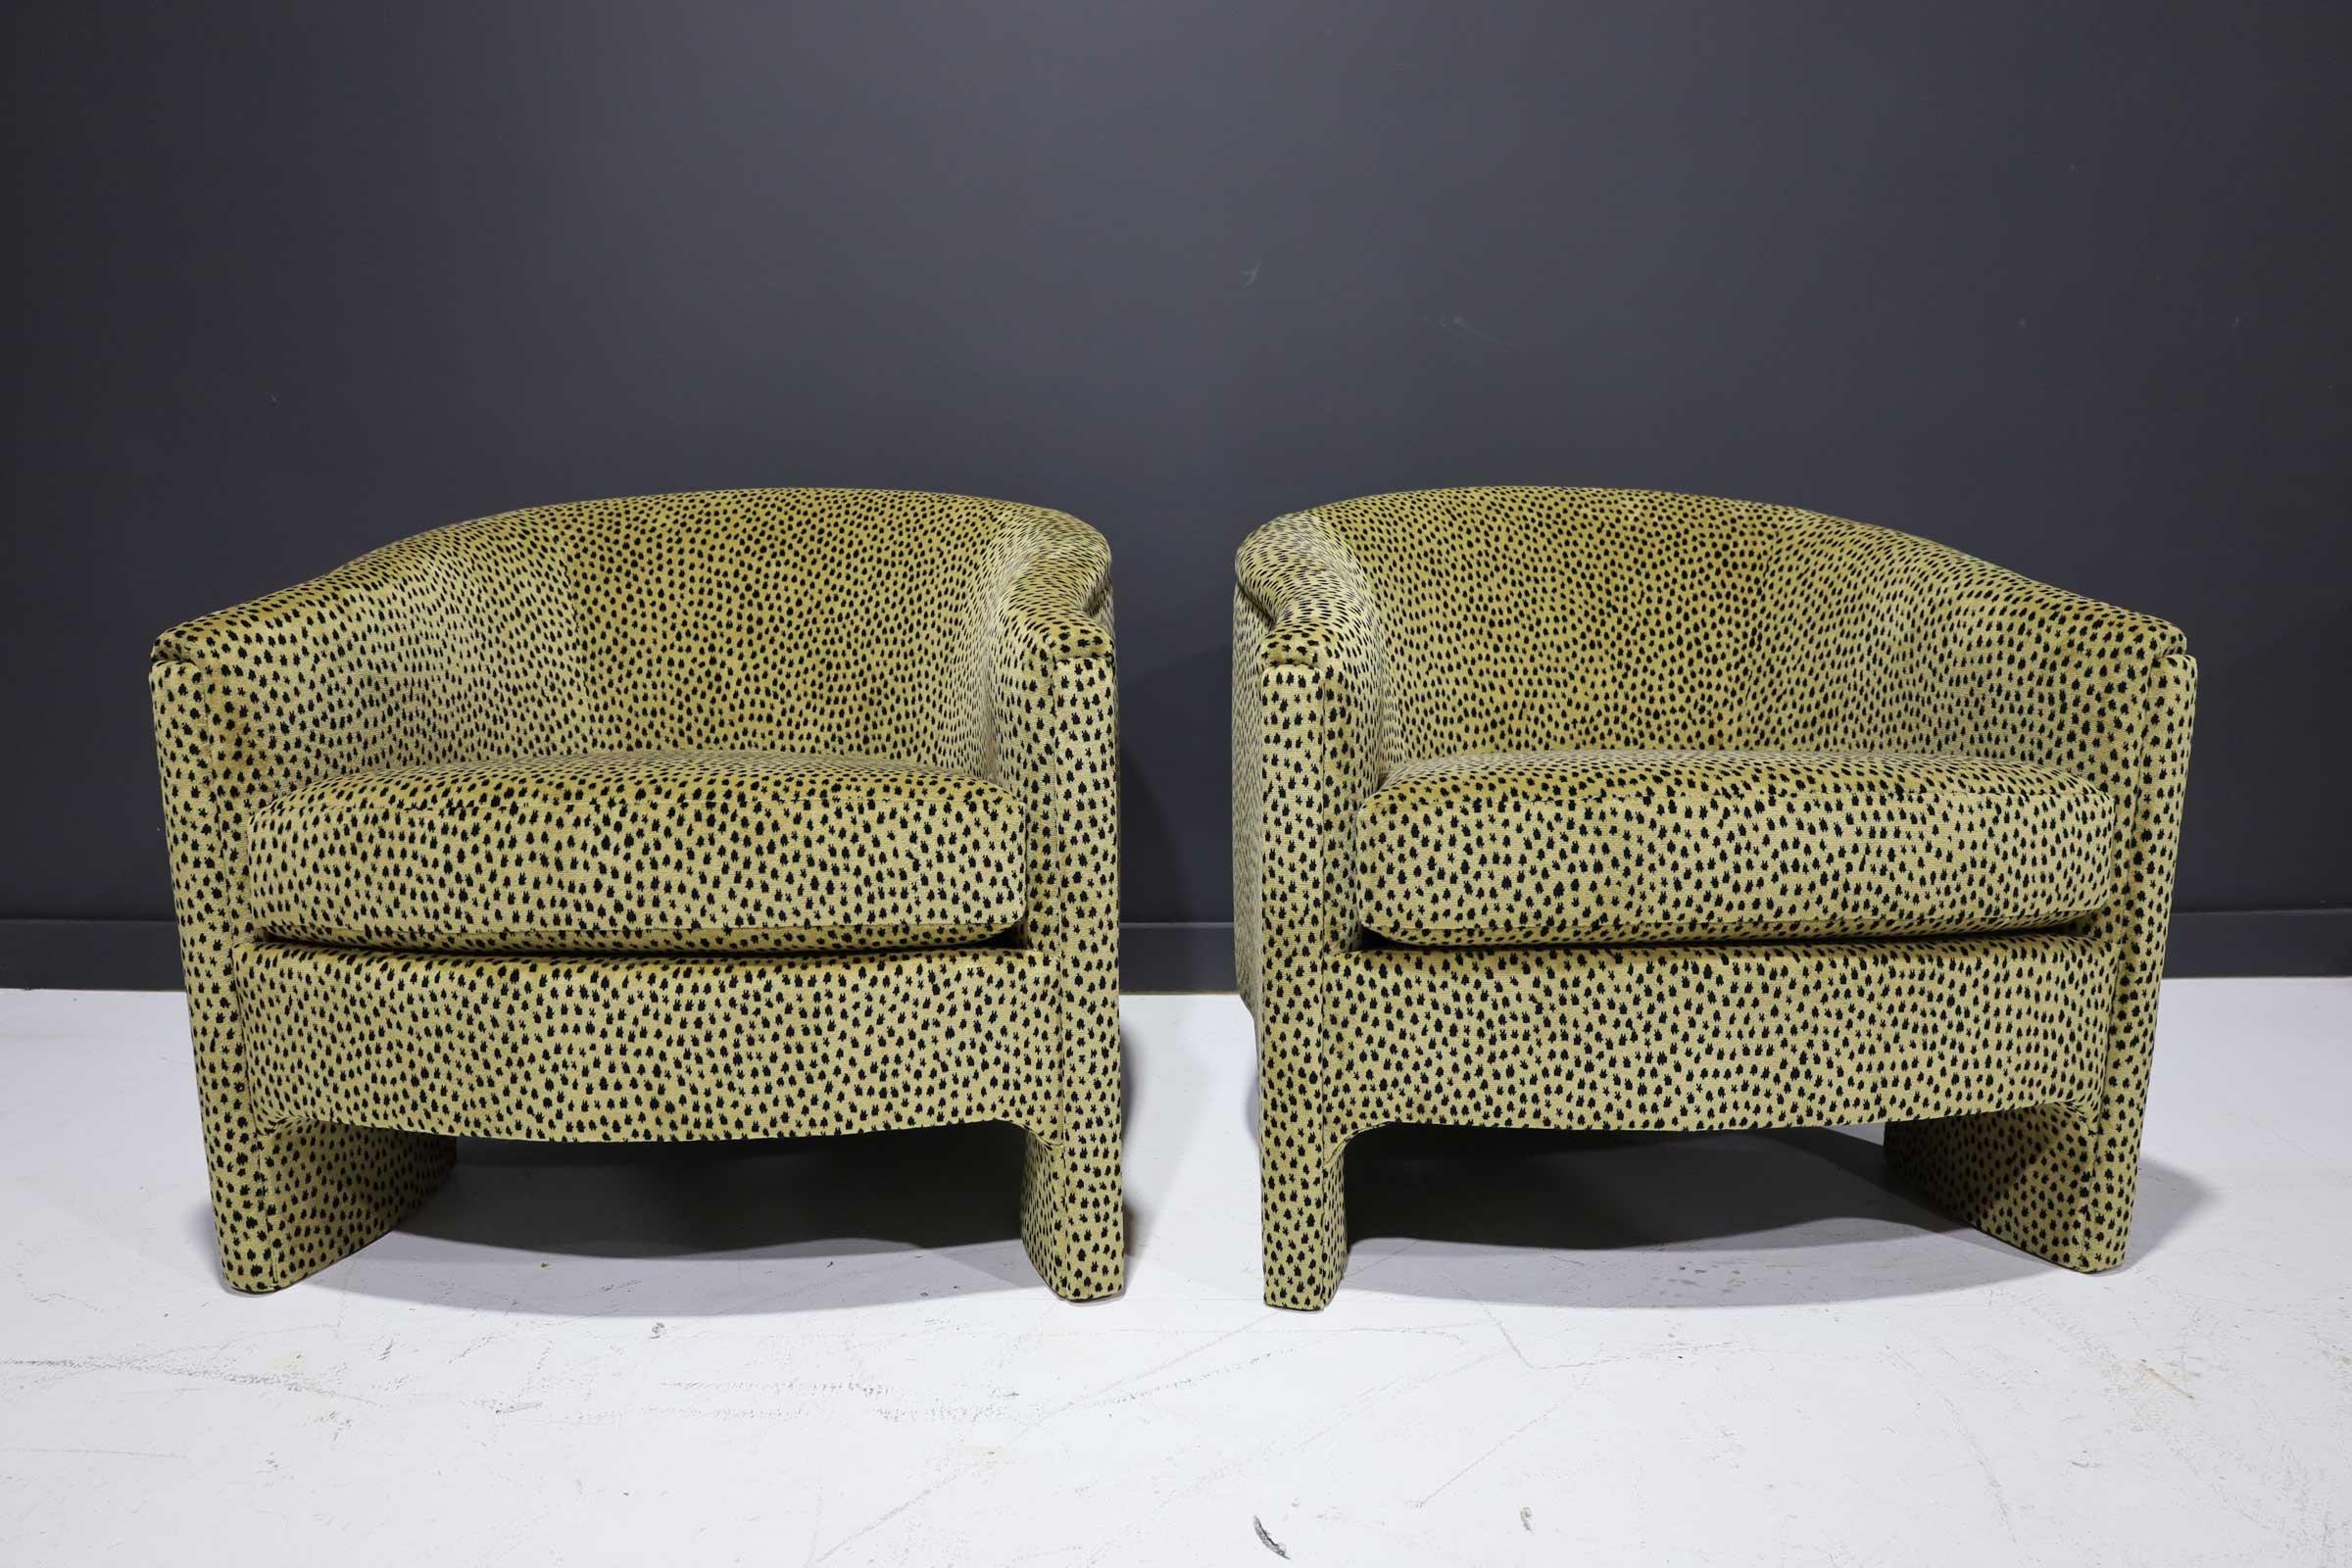 Luxuriöser Samtstoff mit Gepardenmuster. Dies ist ein Paar Stühle im Stil von Kelly Wearstler. Die Stühle sind gut konstruiert und sehr stabil. Die Stühle sind skulptural und haben eine T-förmige Rückenlehne.